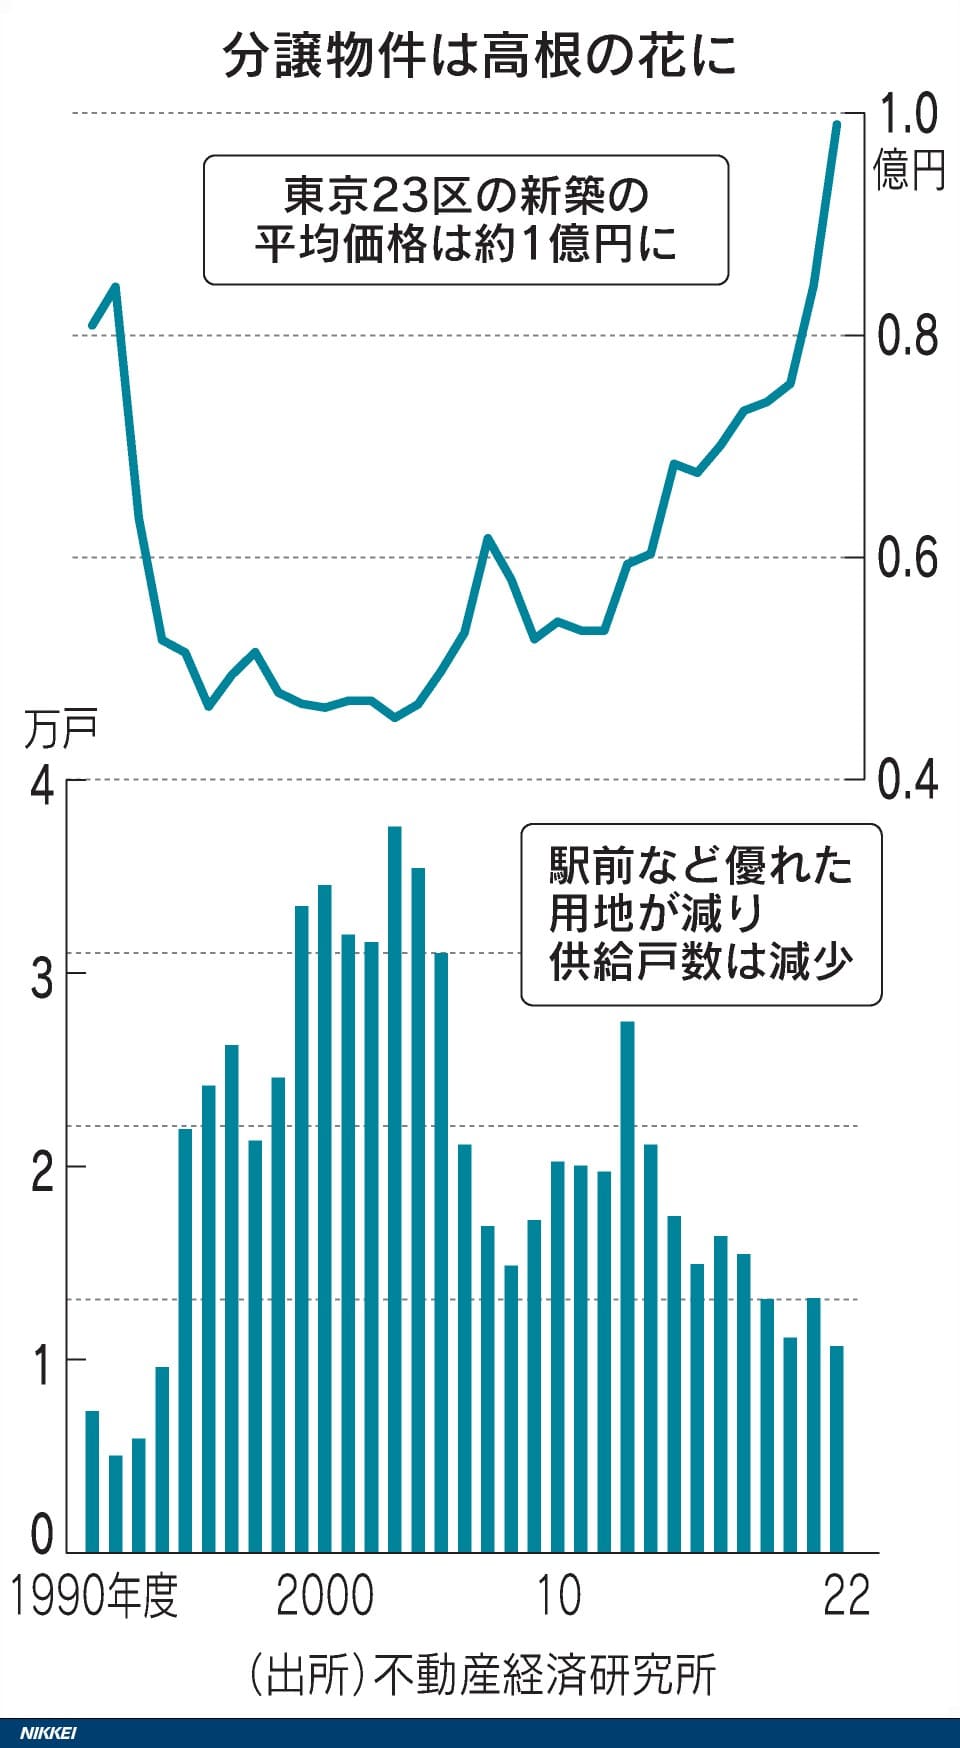 東京23区の新築分譲物件の平均価格と供給戸数を示したグラフ